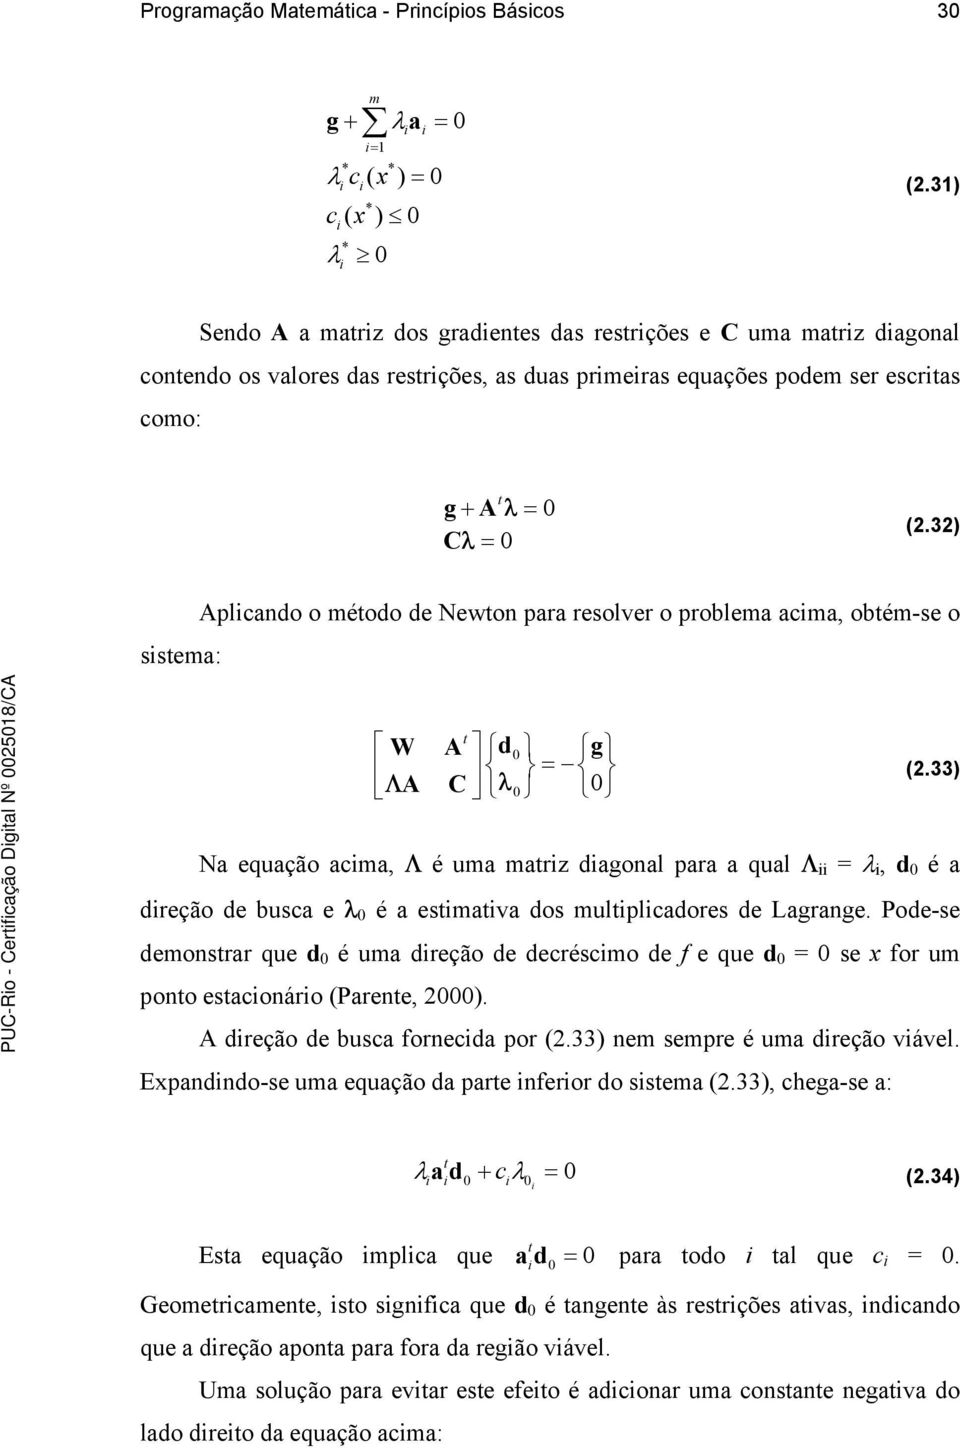 3) Aplcando o méodo de Newon para resolver o problema acma, obém-se o ssema: d W A = ΛA C λ g (.